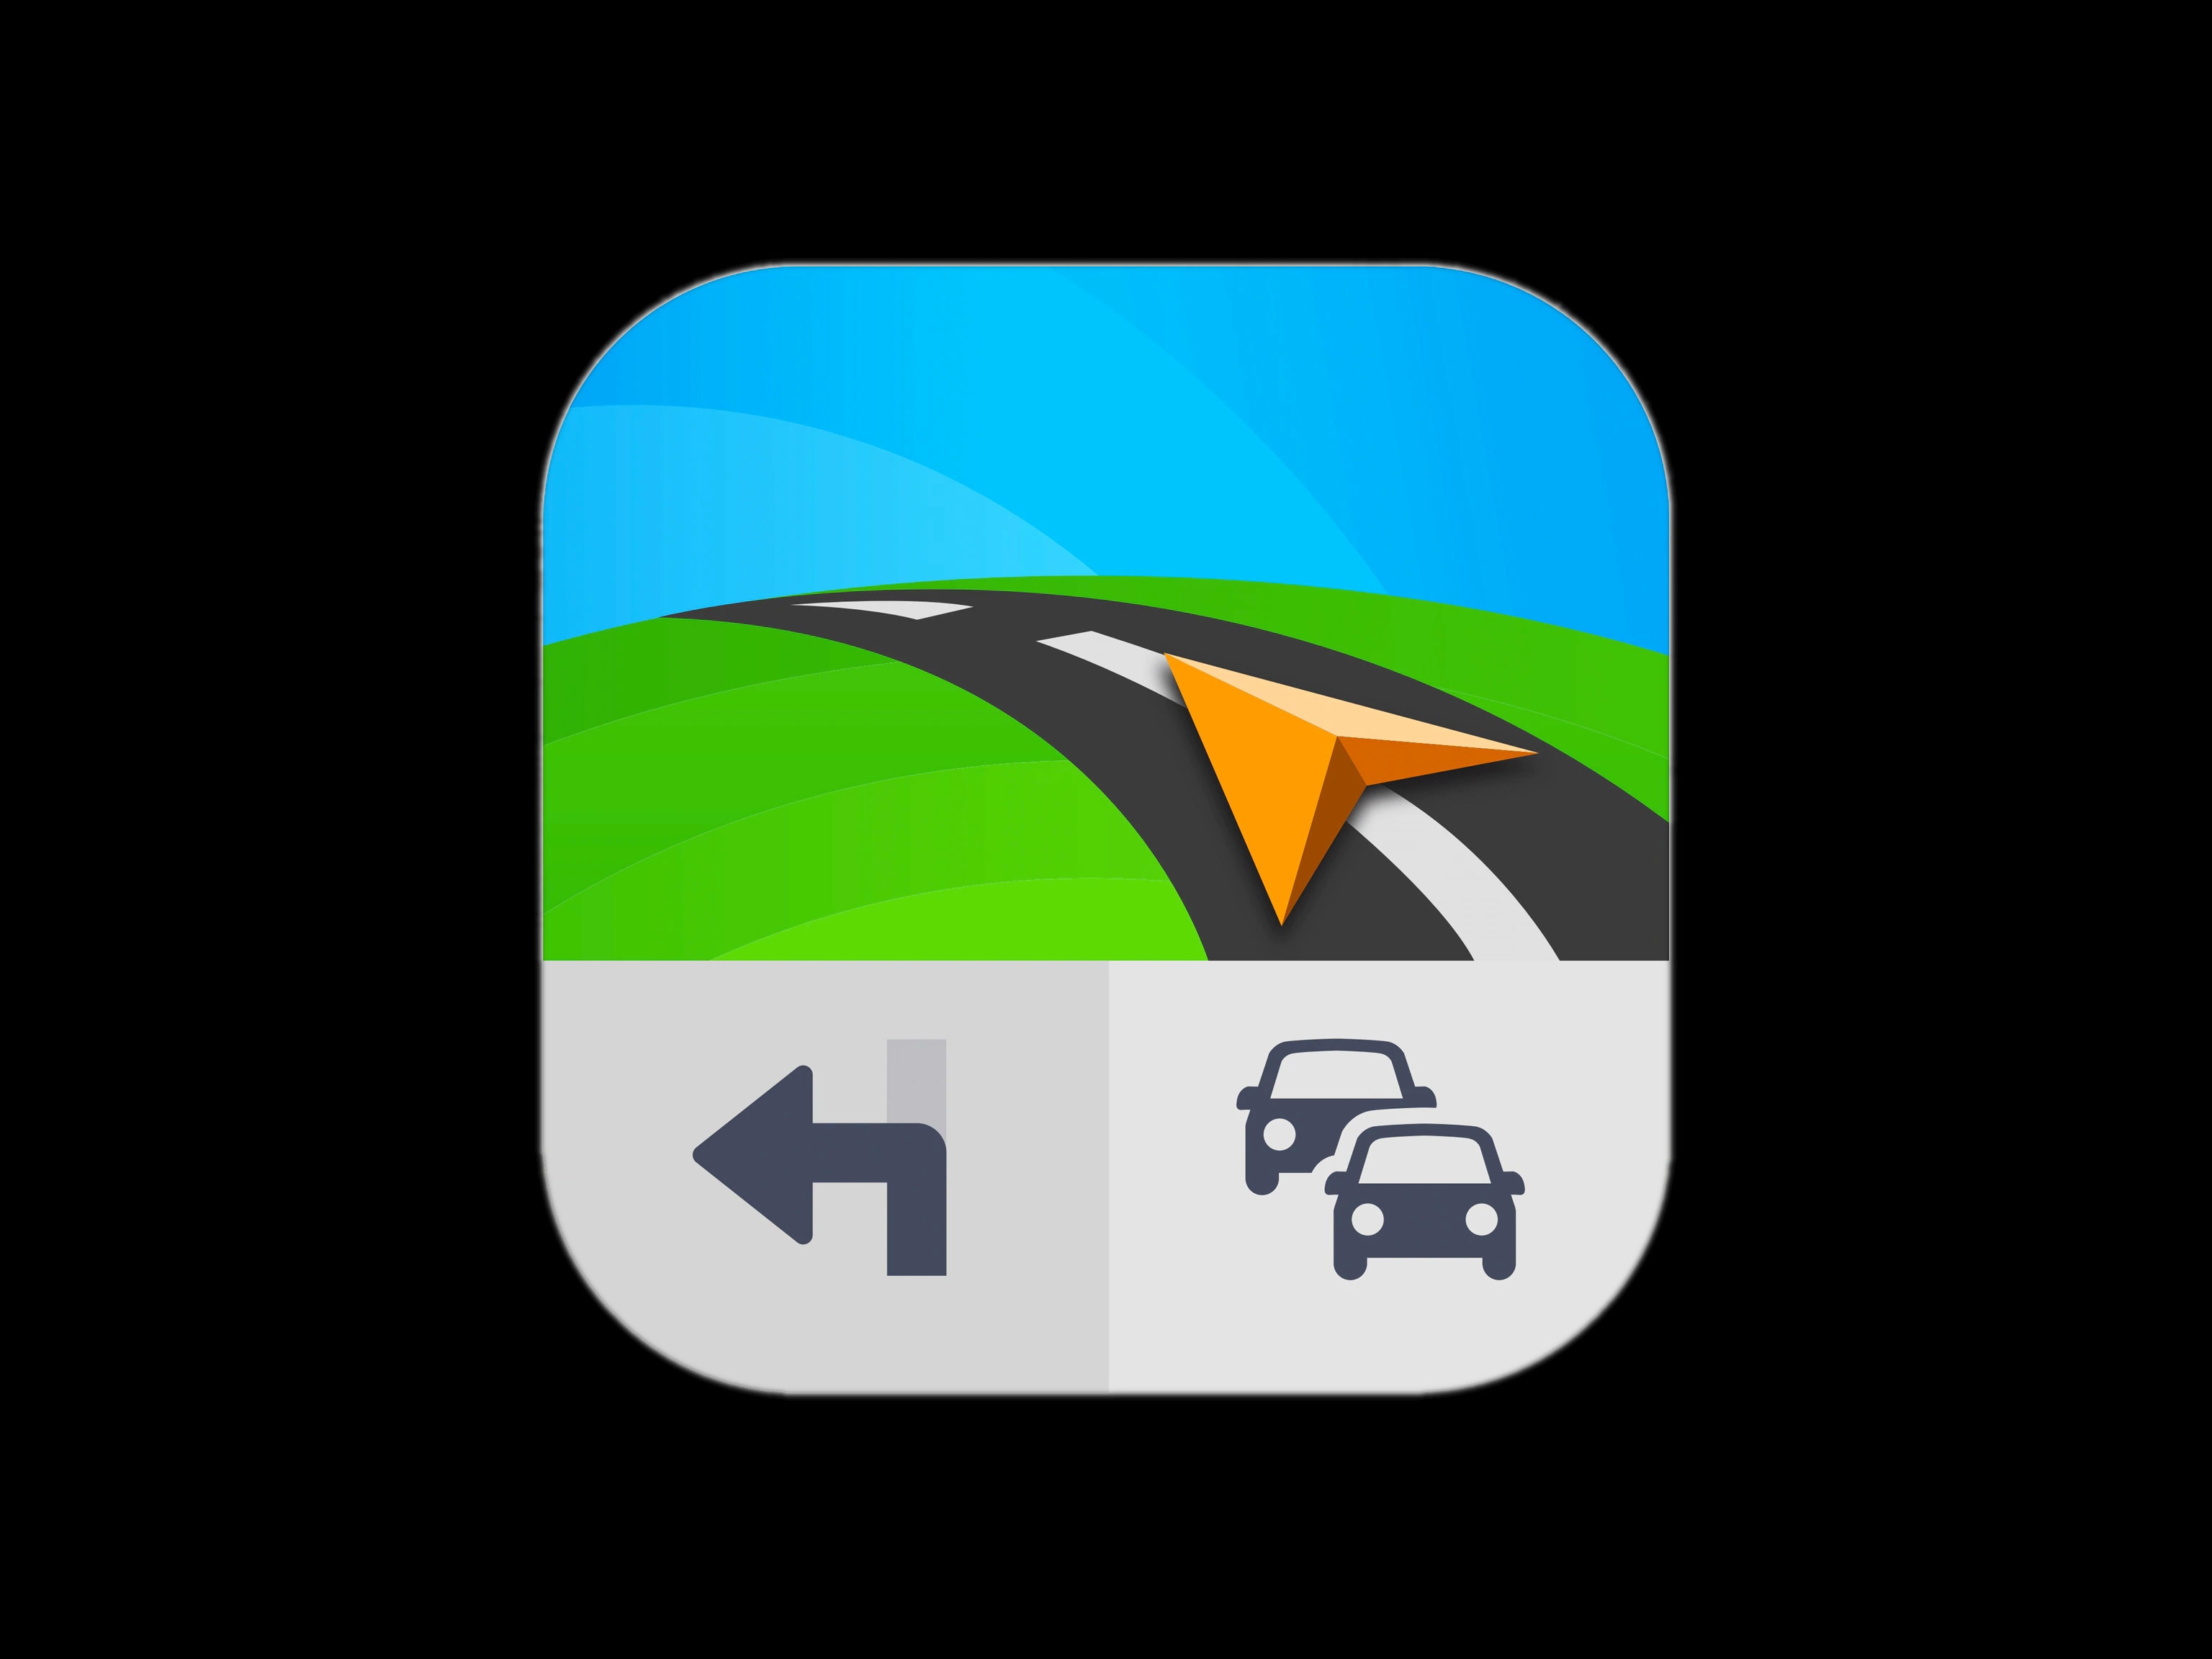 The Sygic Car Navigation app logo